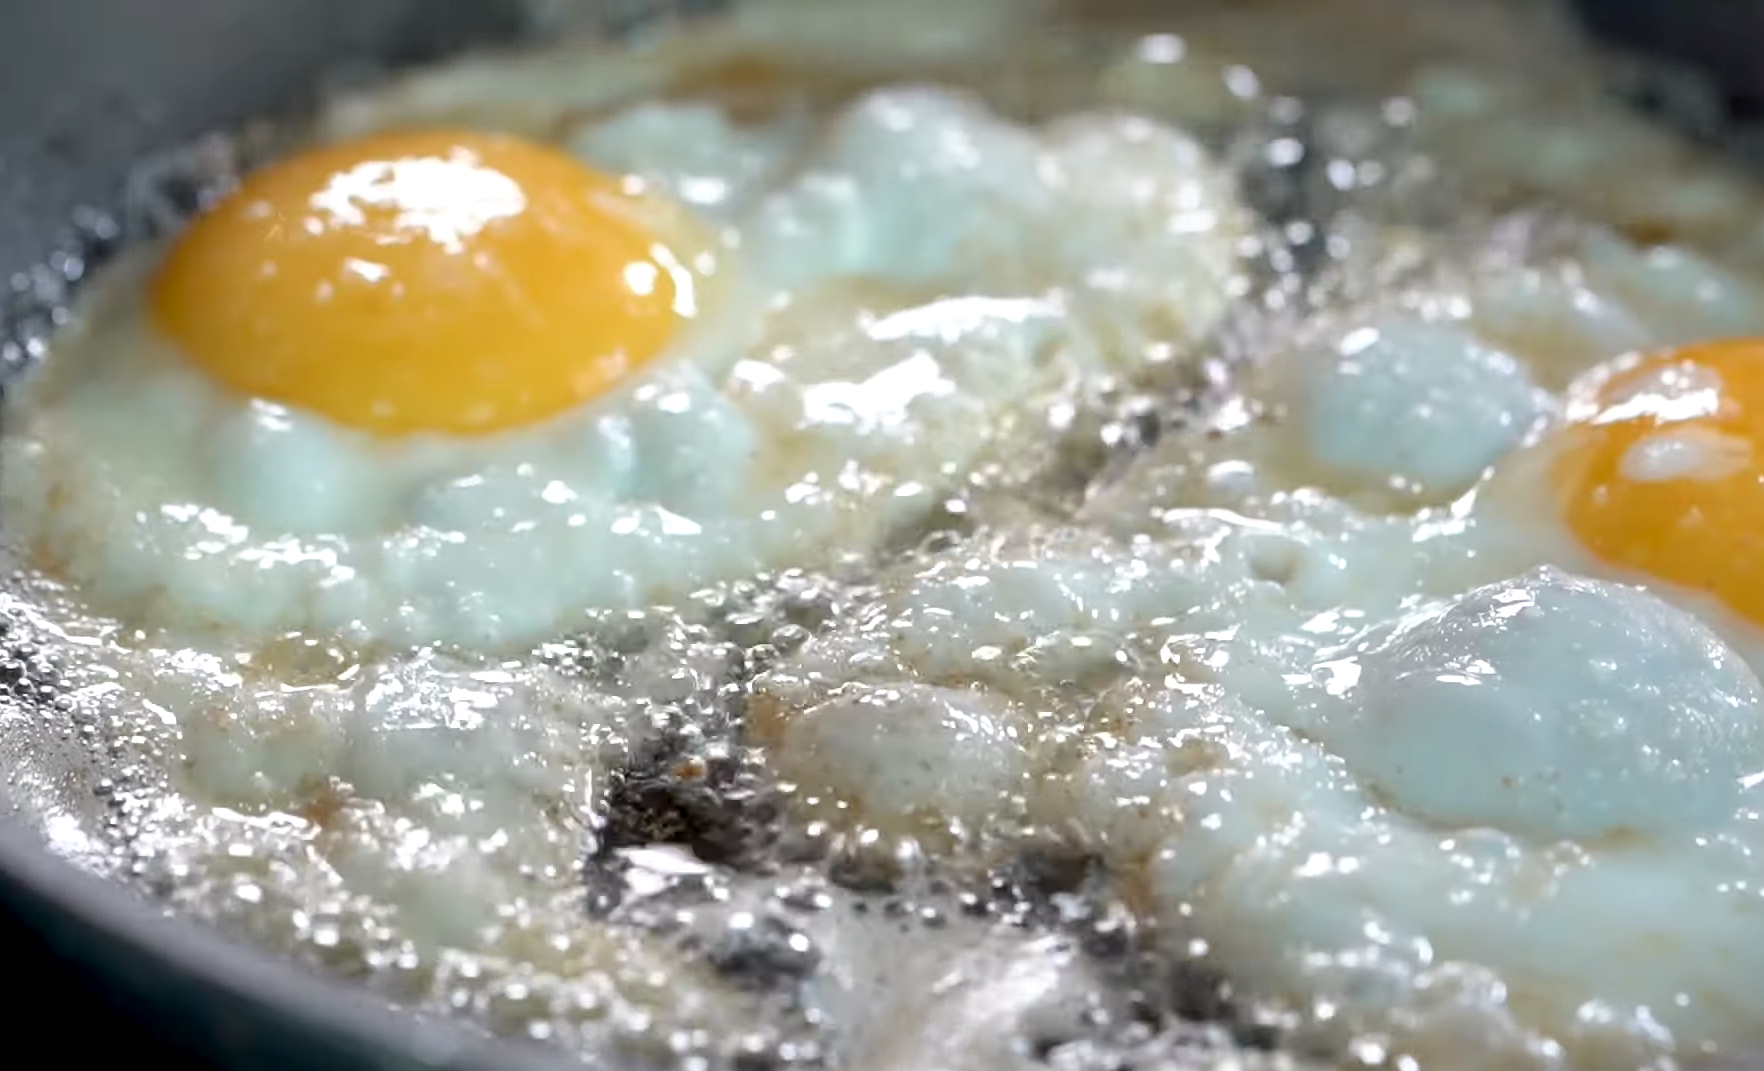 А вы правильно готовите обычную яичницу? Главные правила простого и  любимого завтрака, рецепт - ЗНАЙ ЮА